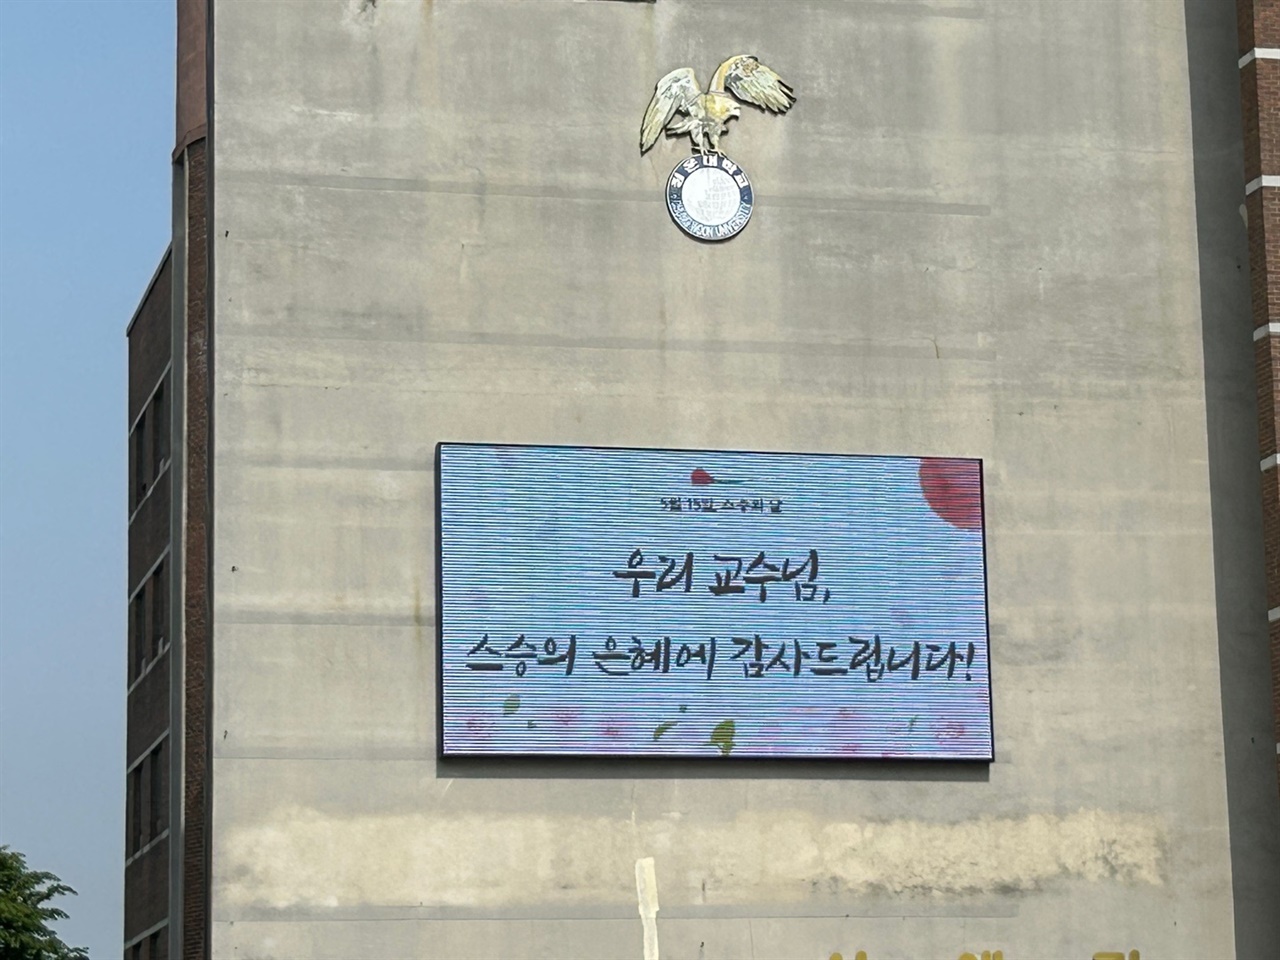 홍성의 한 대학 대형 전광판에 스승의 날을 축하하는 글이 적혀있다. 